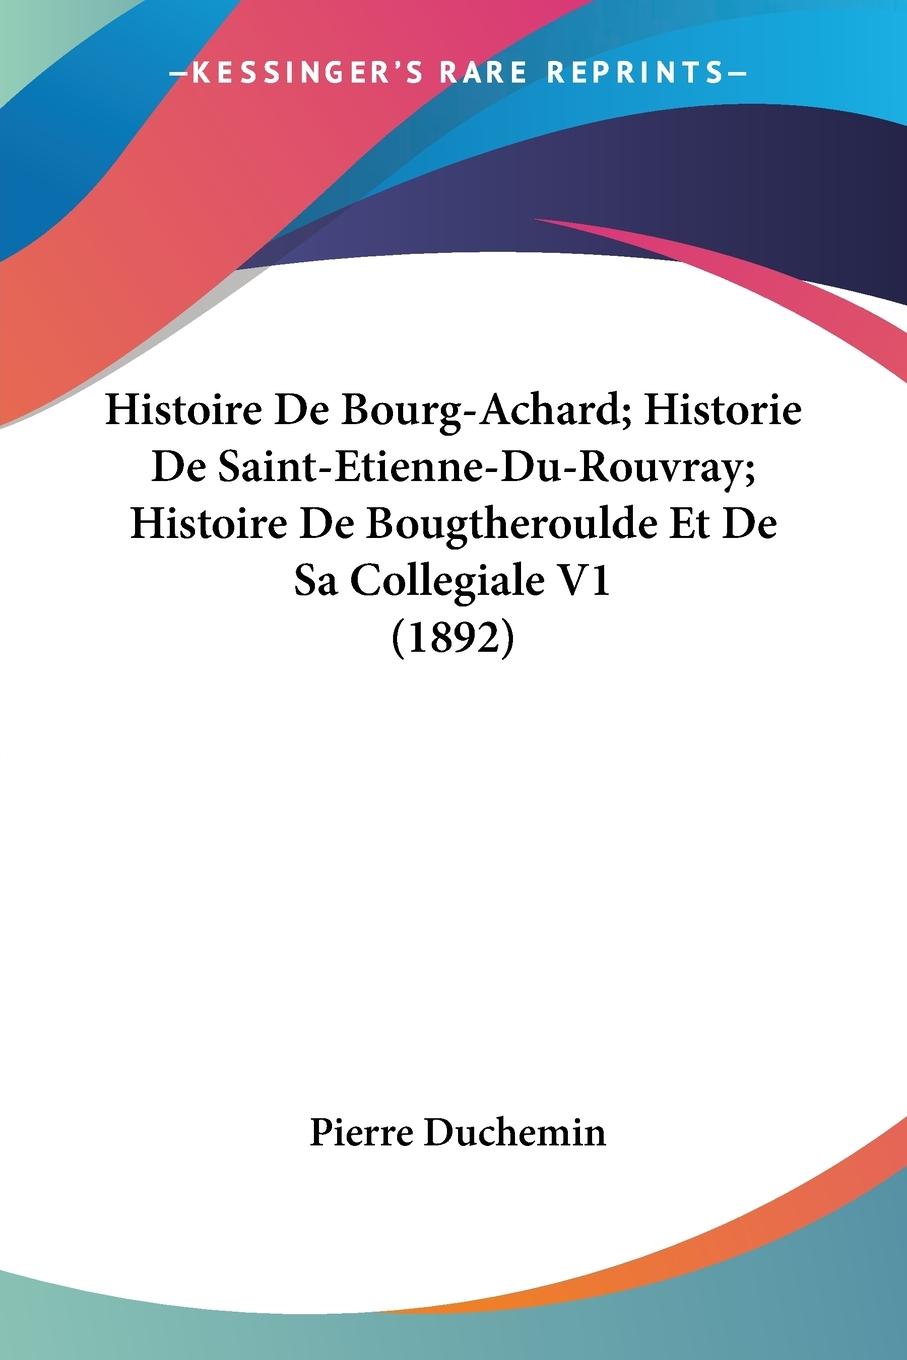 Histoire De Bourg-Achard Historie De Saint-Etienne-Du-Rouvray Histoire De Bougtheroulde Et De Sa Collegiale V1 (1892) - Duchemin, Pierre